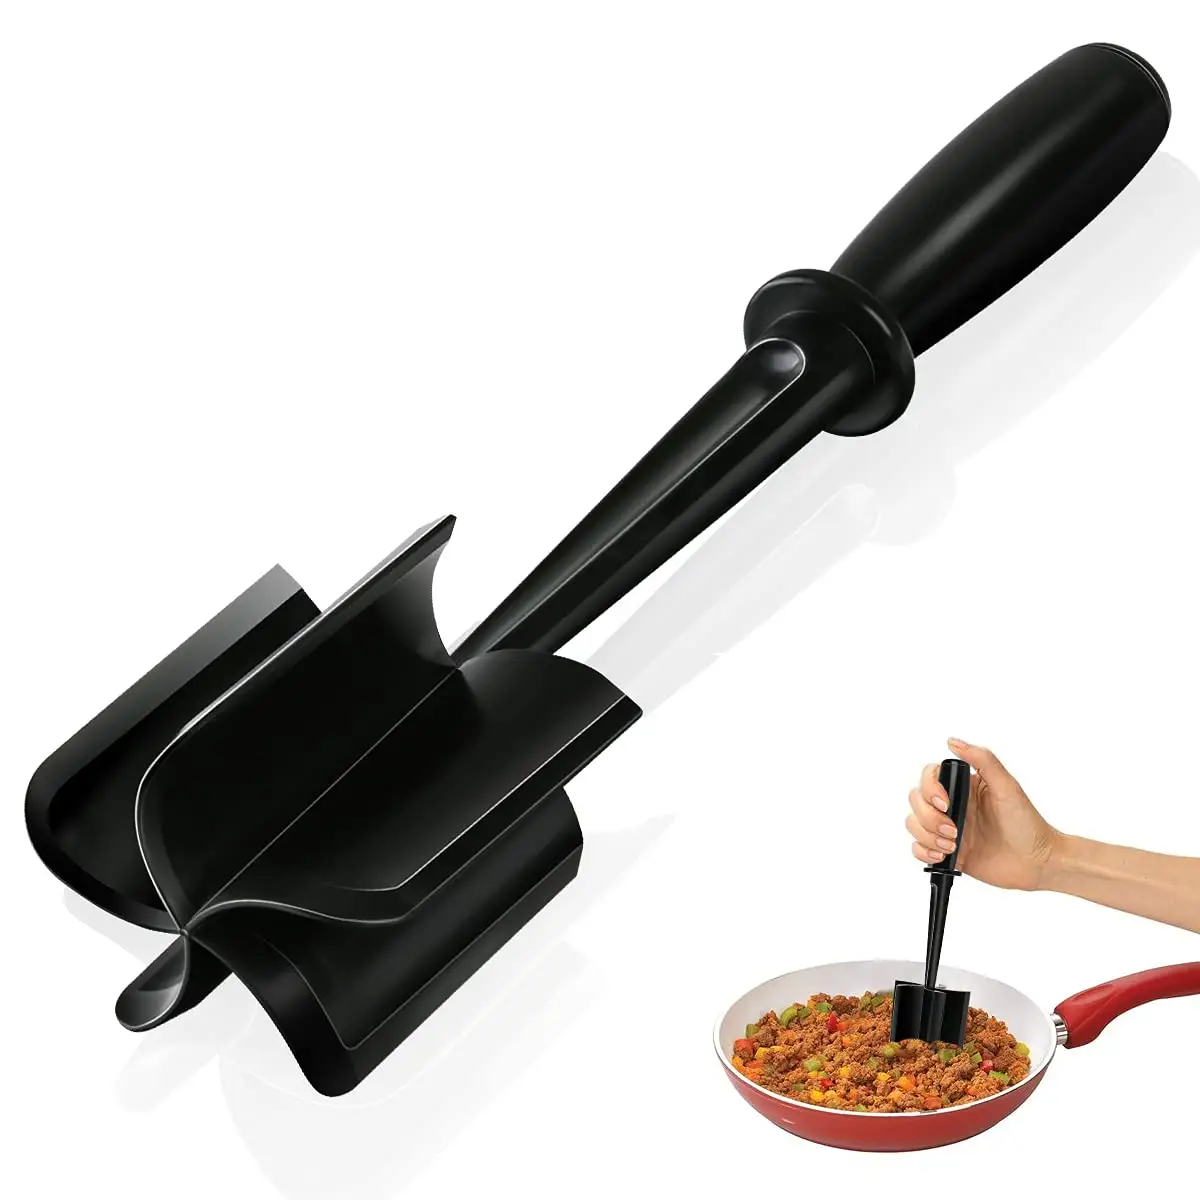 Антипригарный кухонный инструмент премиум-класса, термостойкий измельчитель для картофеля, гамбургера, мяса